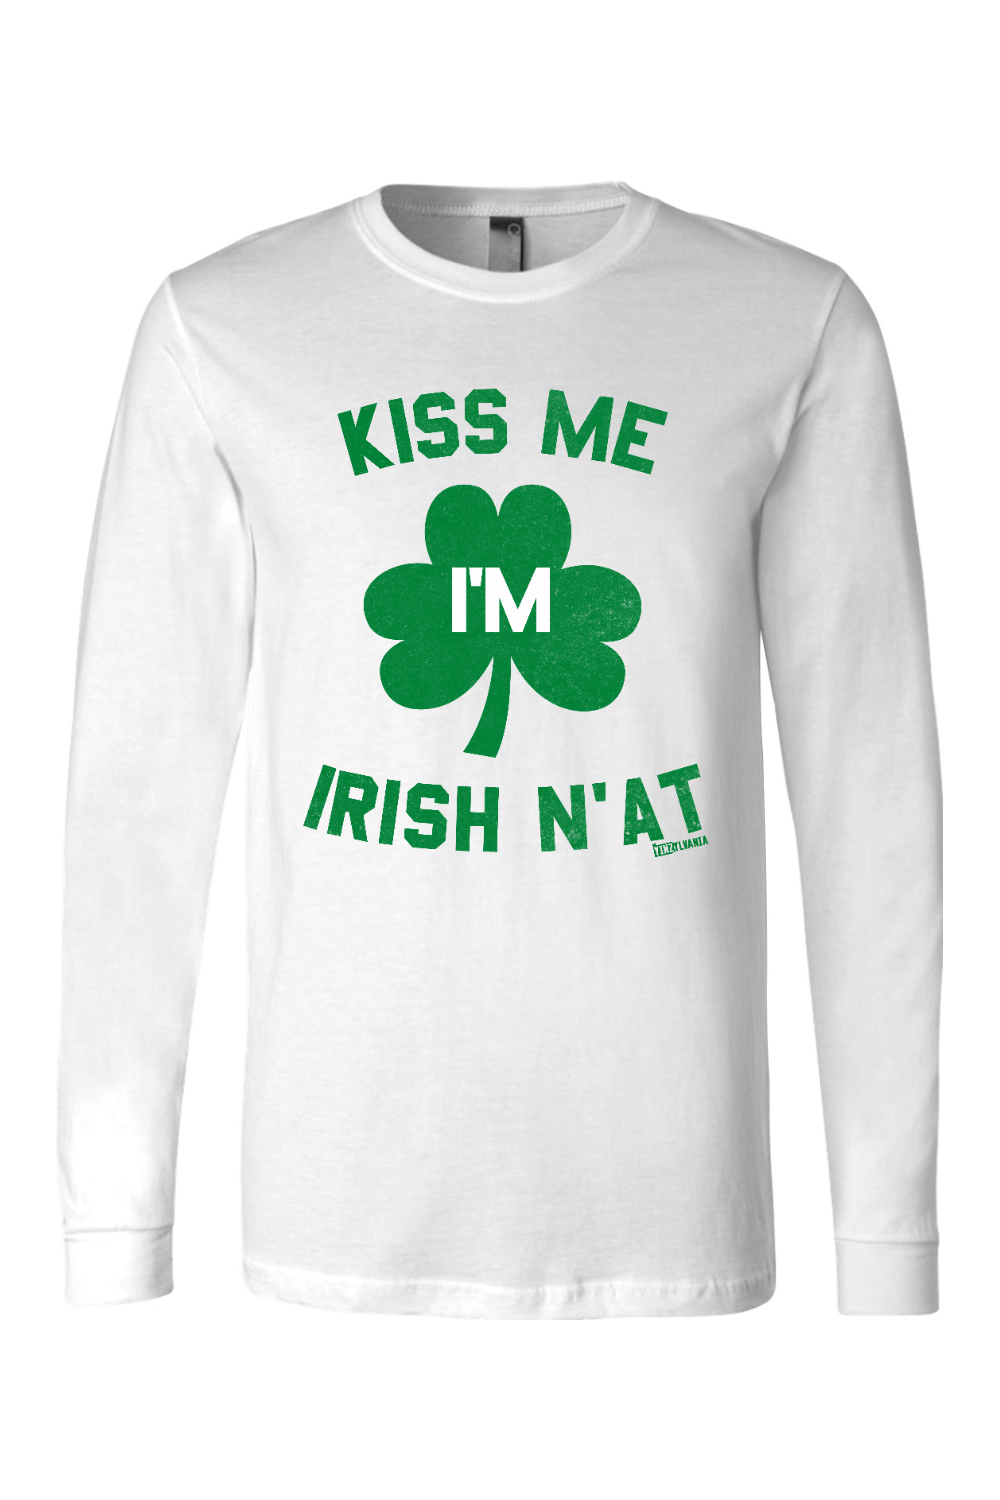 Kiss Me I'm Irish N'at - Long Sleeve Tee - Yinzylvania